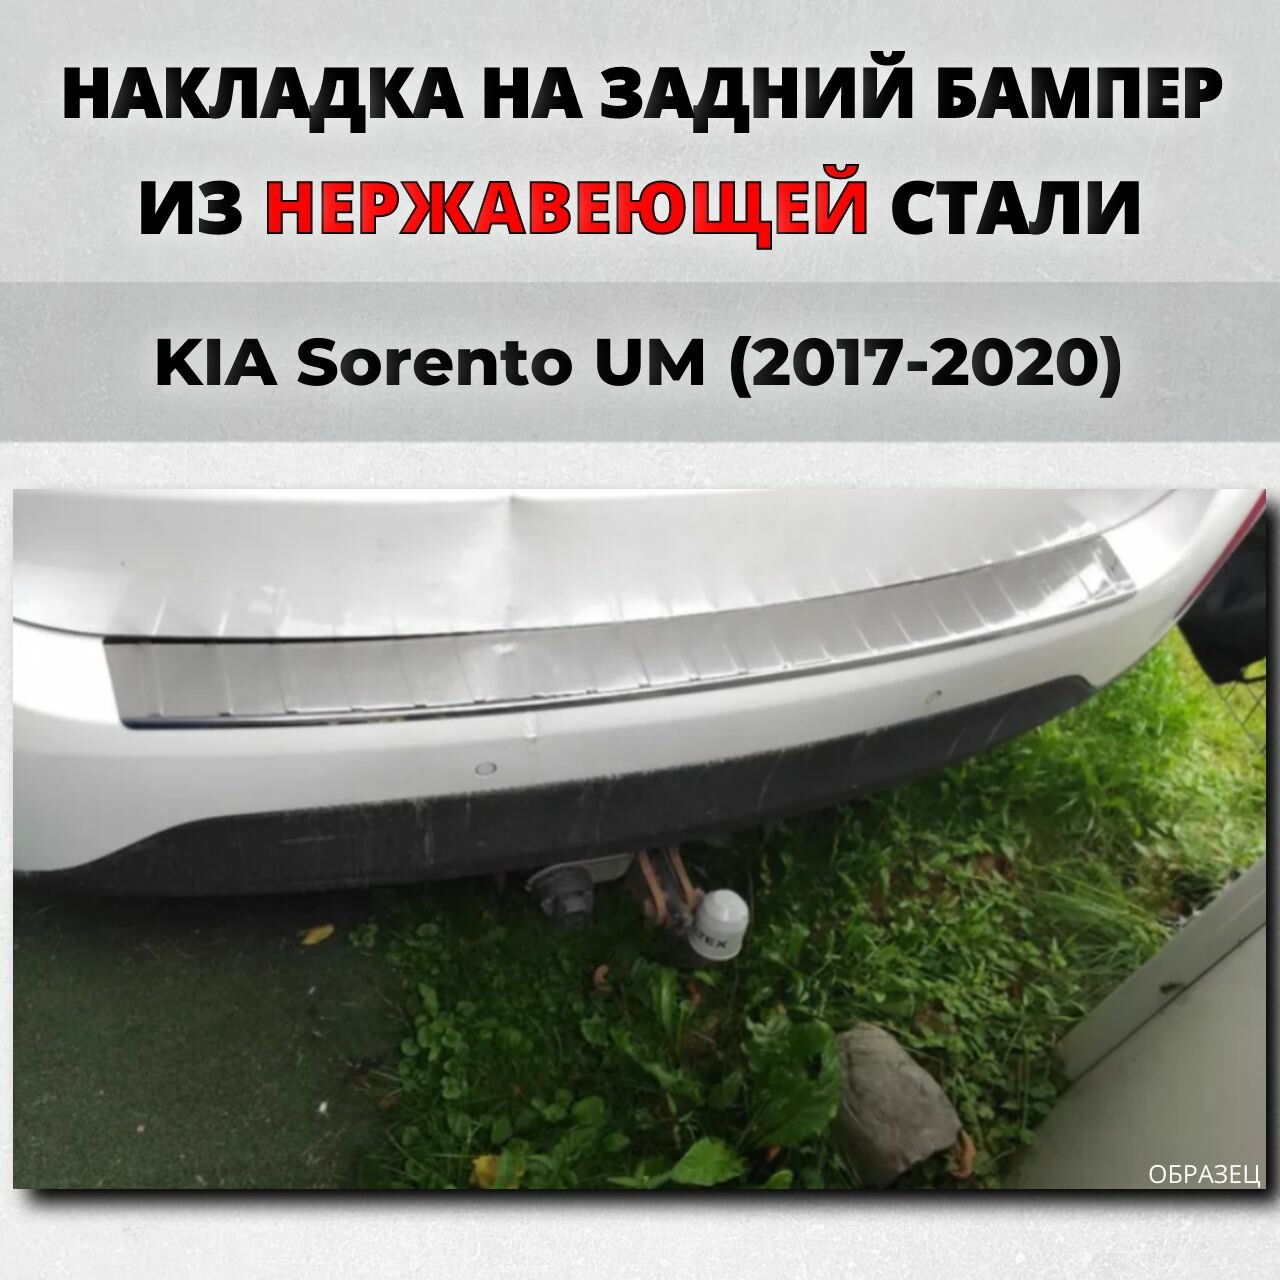 Накладка на задний бампер Киа Соренто Прайм UM 2017-2020 с загибом нерж. сталь / защита бампера KIA Sorento Prime Кия